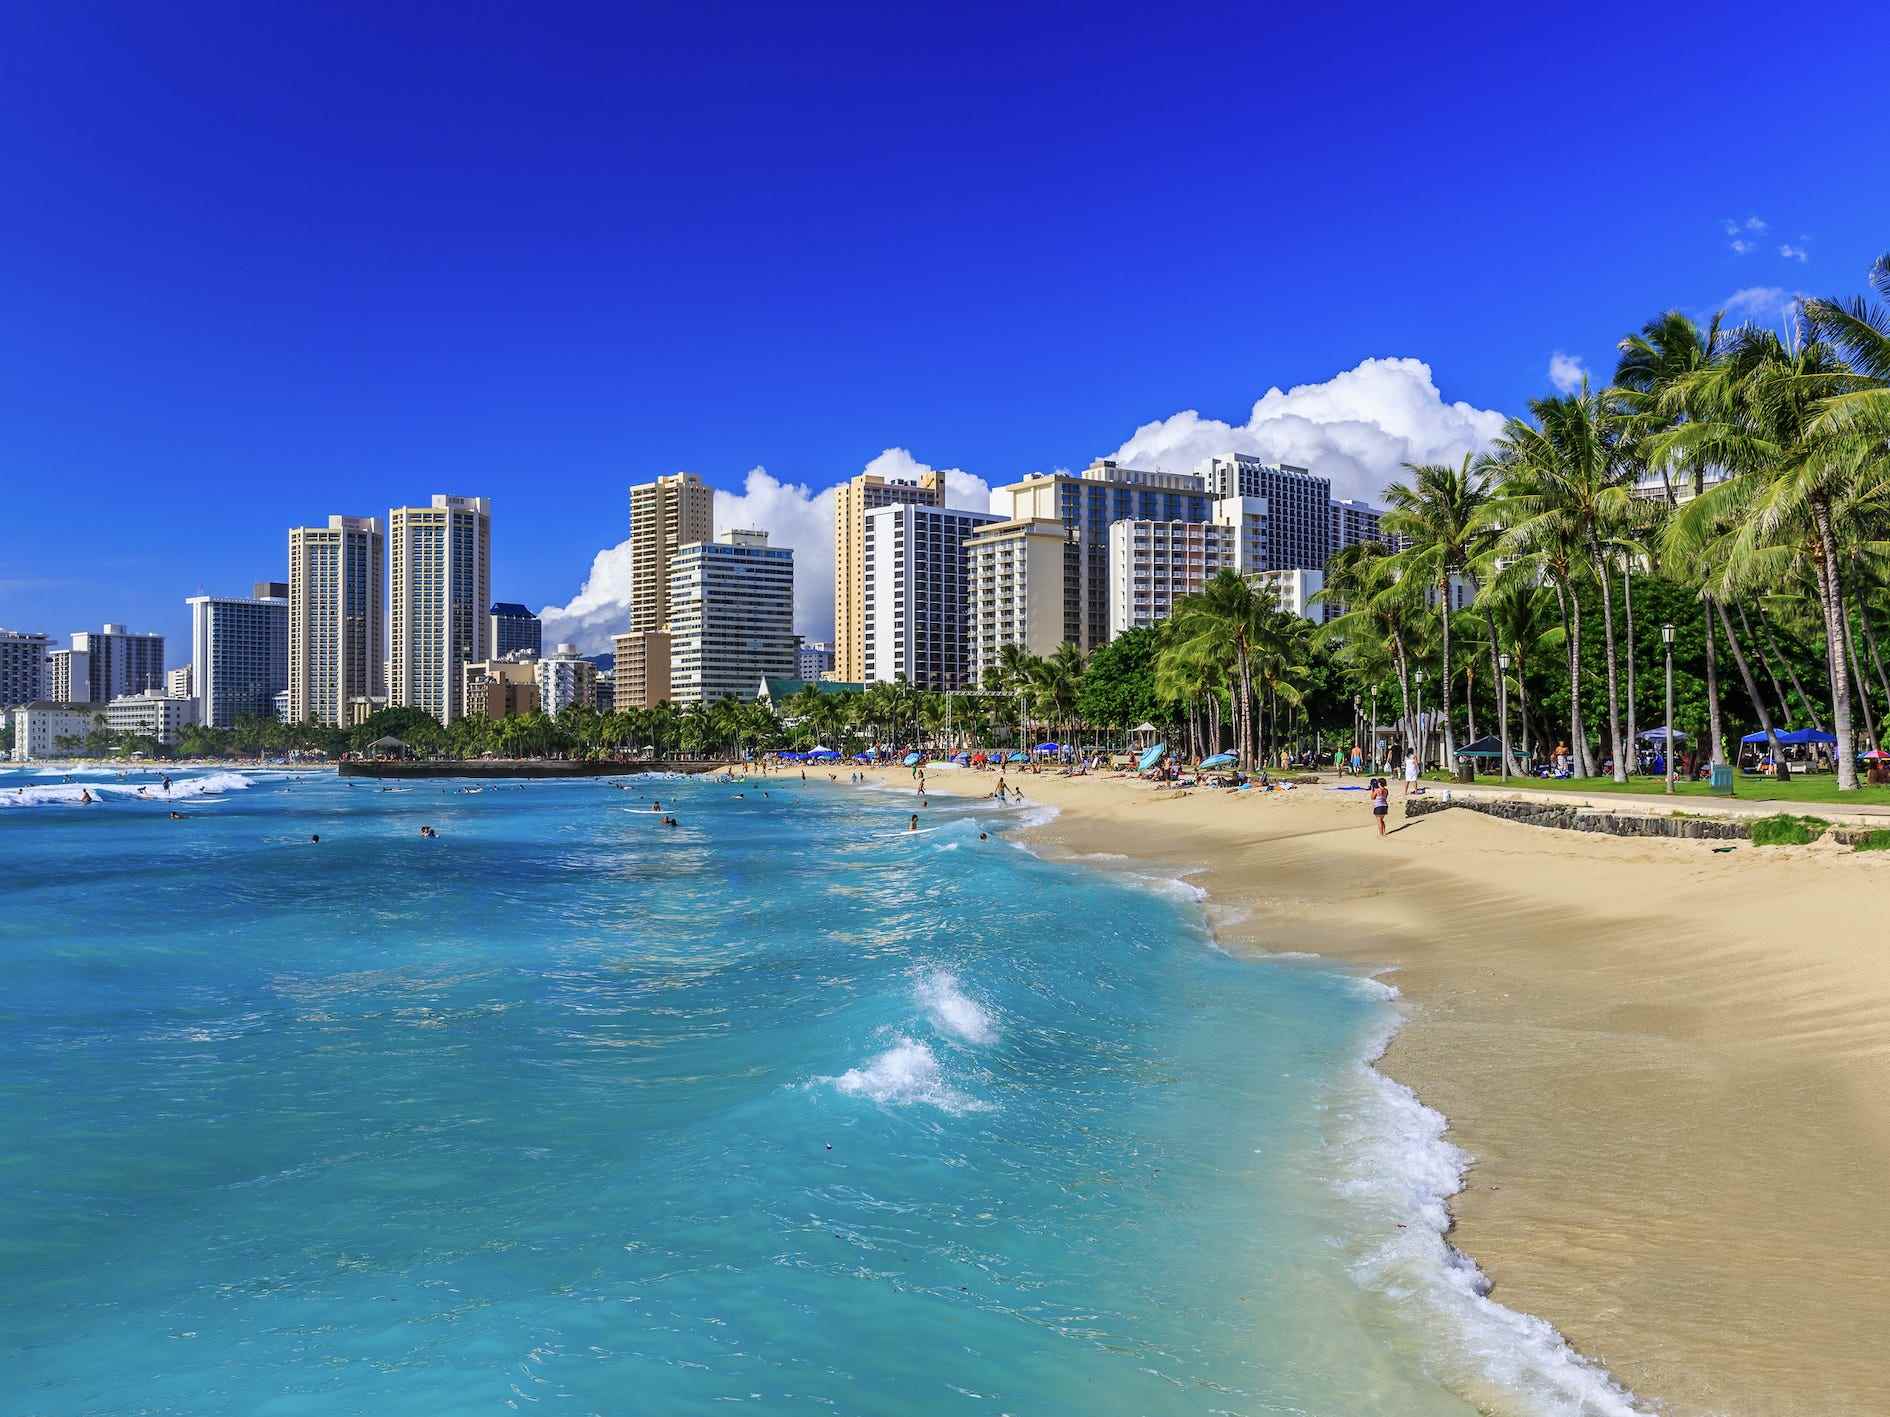 Ein Blick auf Honolulu vom Strand mit Gebäuden und Palmen